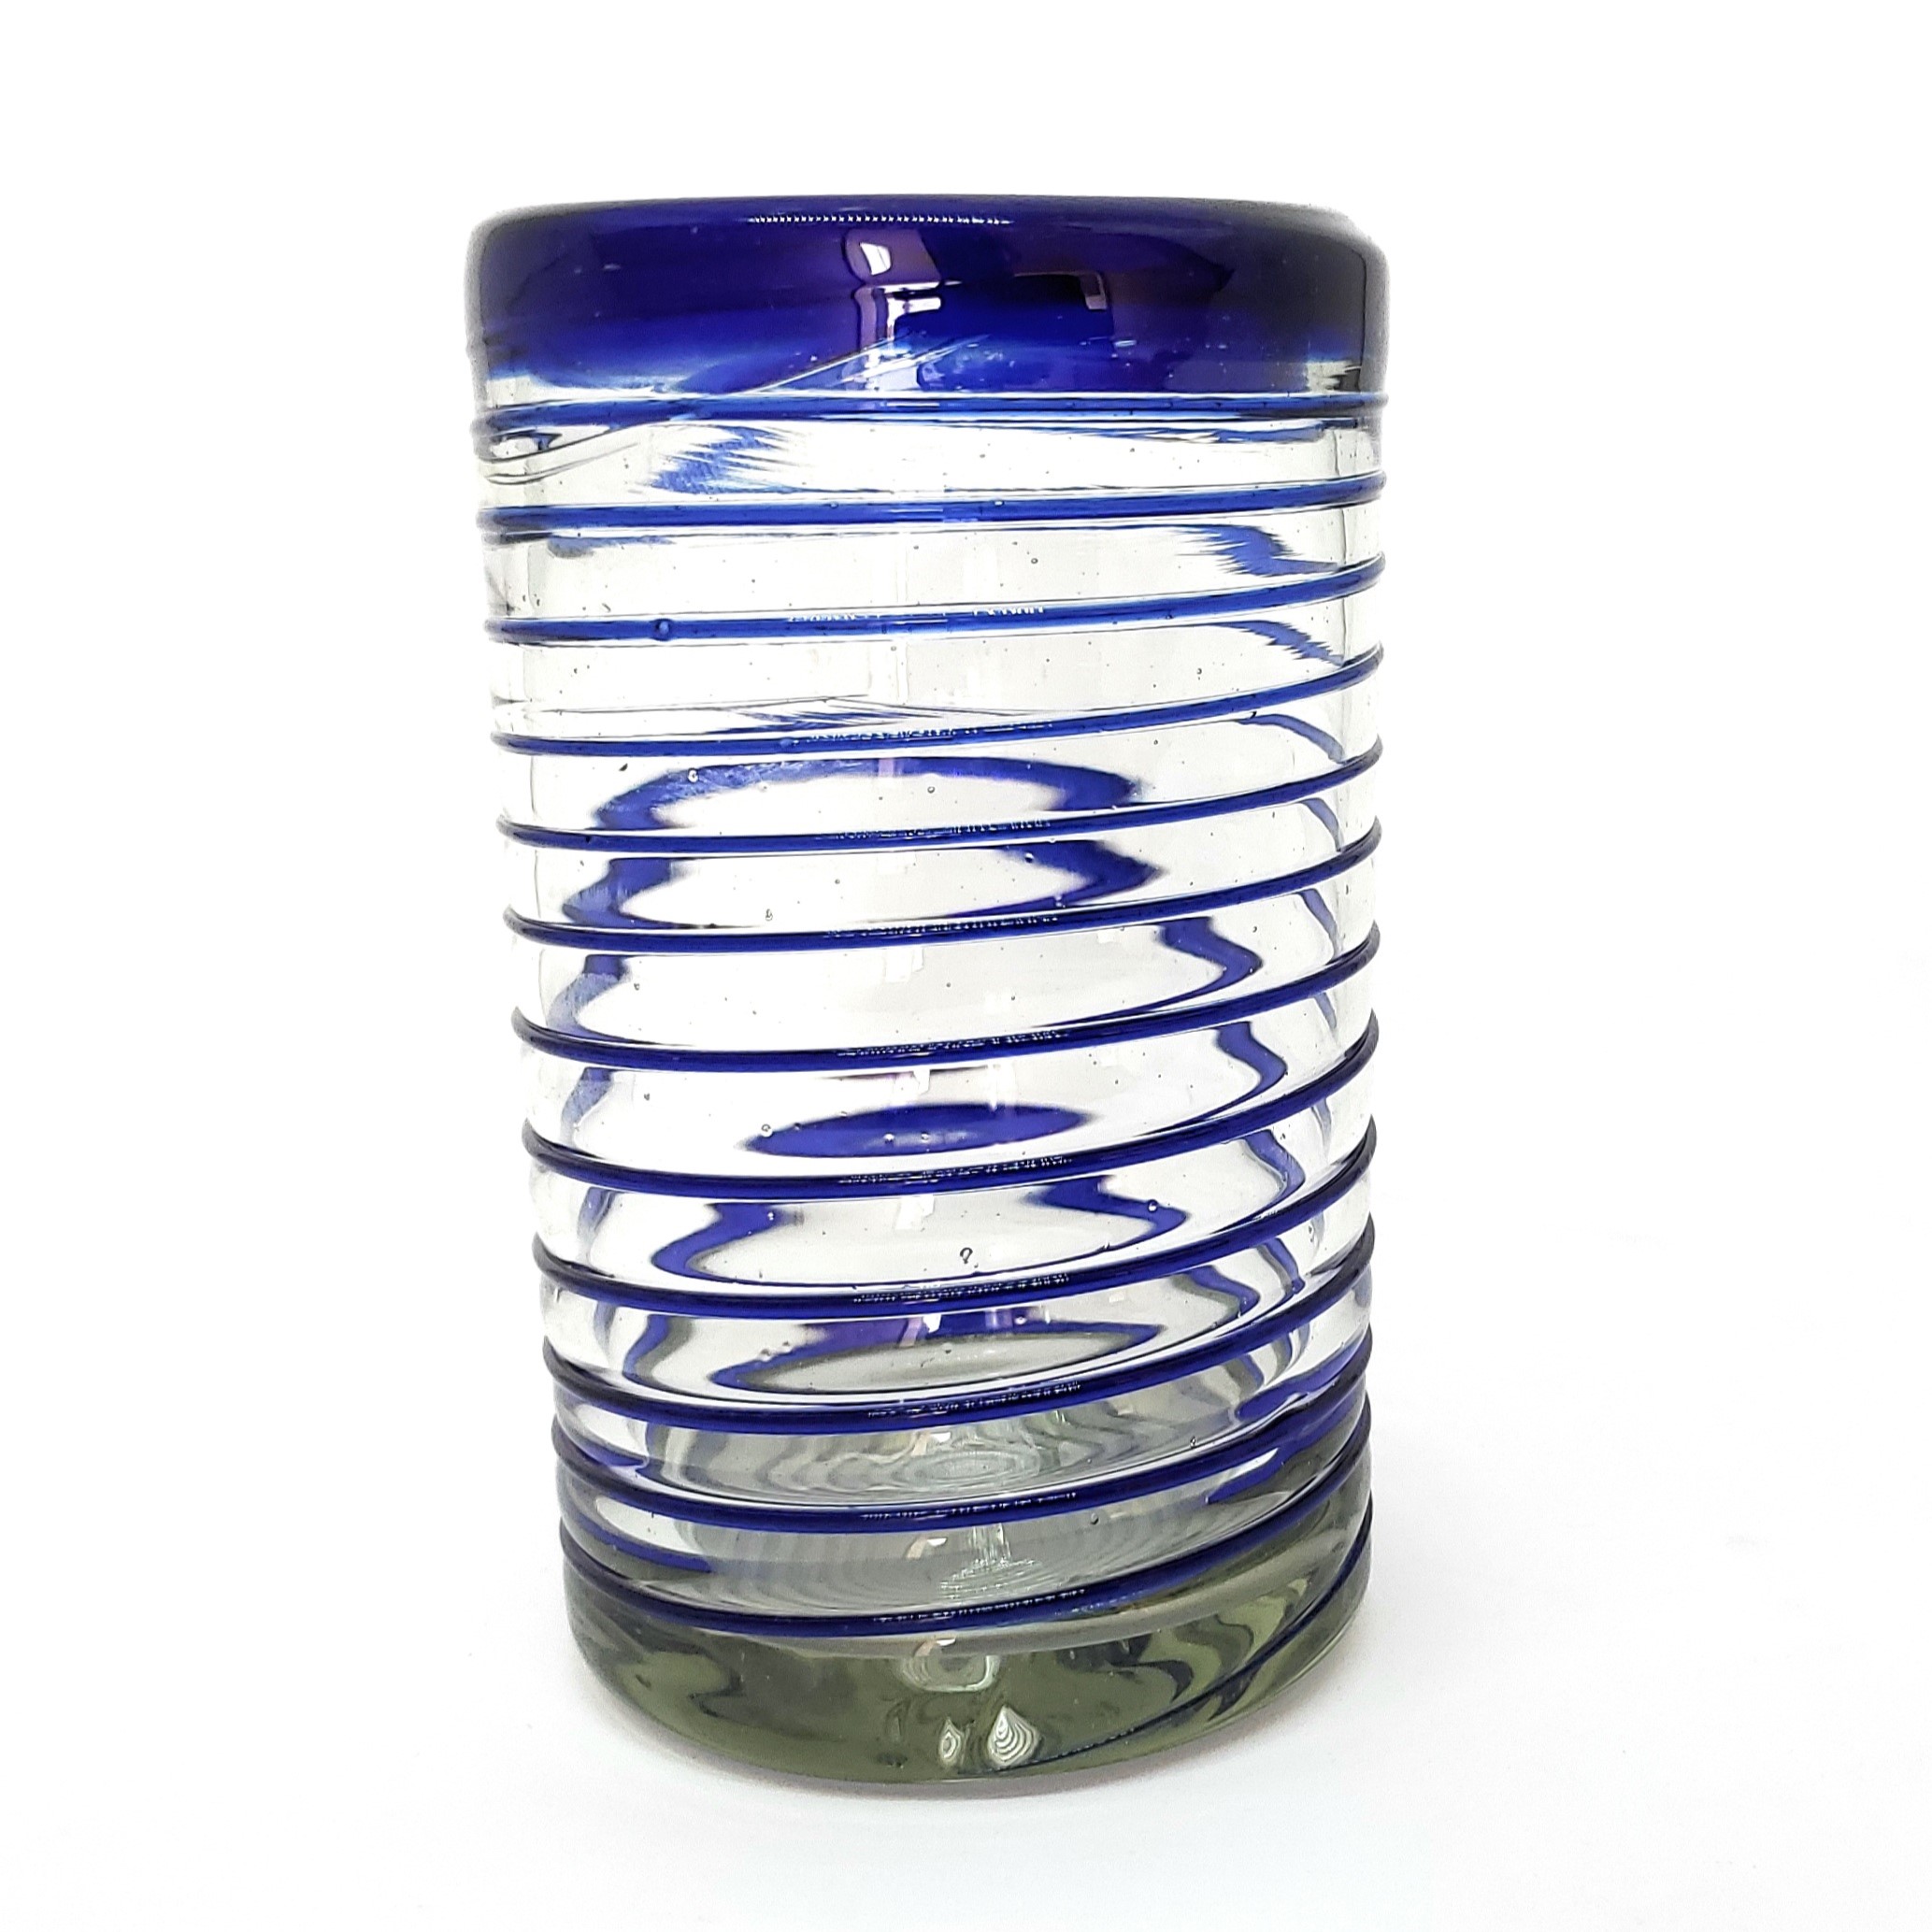 Espiral al Mayoreo / vasos grandes con espiral azul cobalto / Éstos elegantes vasos cubiertos con una espiral azul cobalto darán un toque artesanal a su mesa.